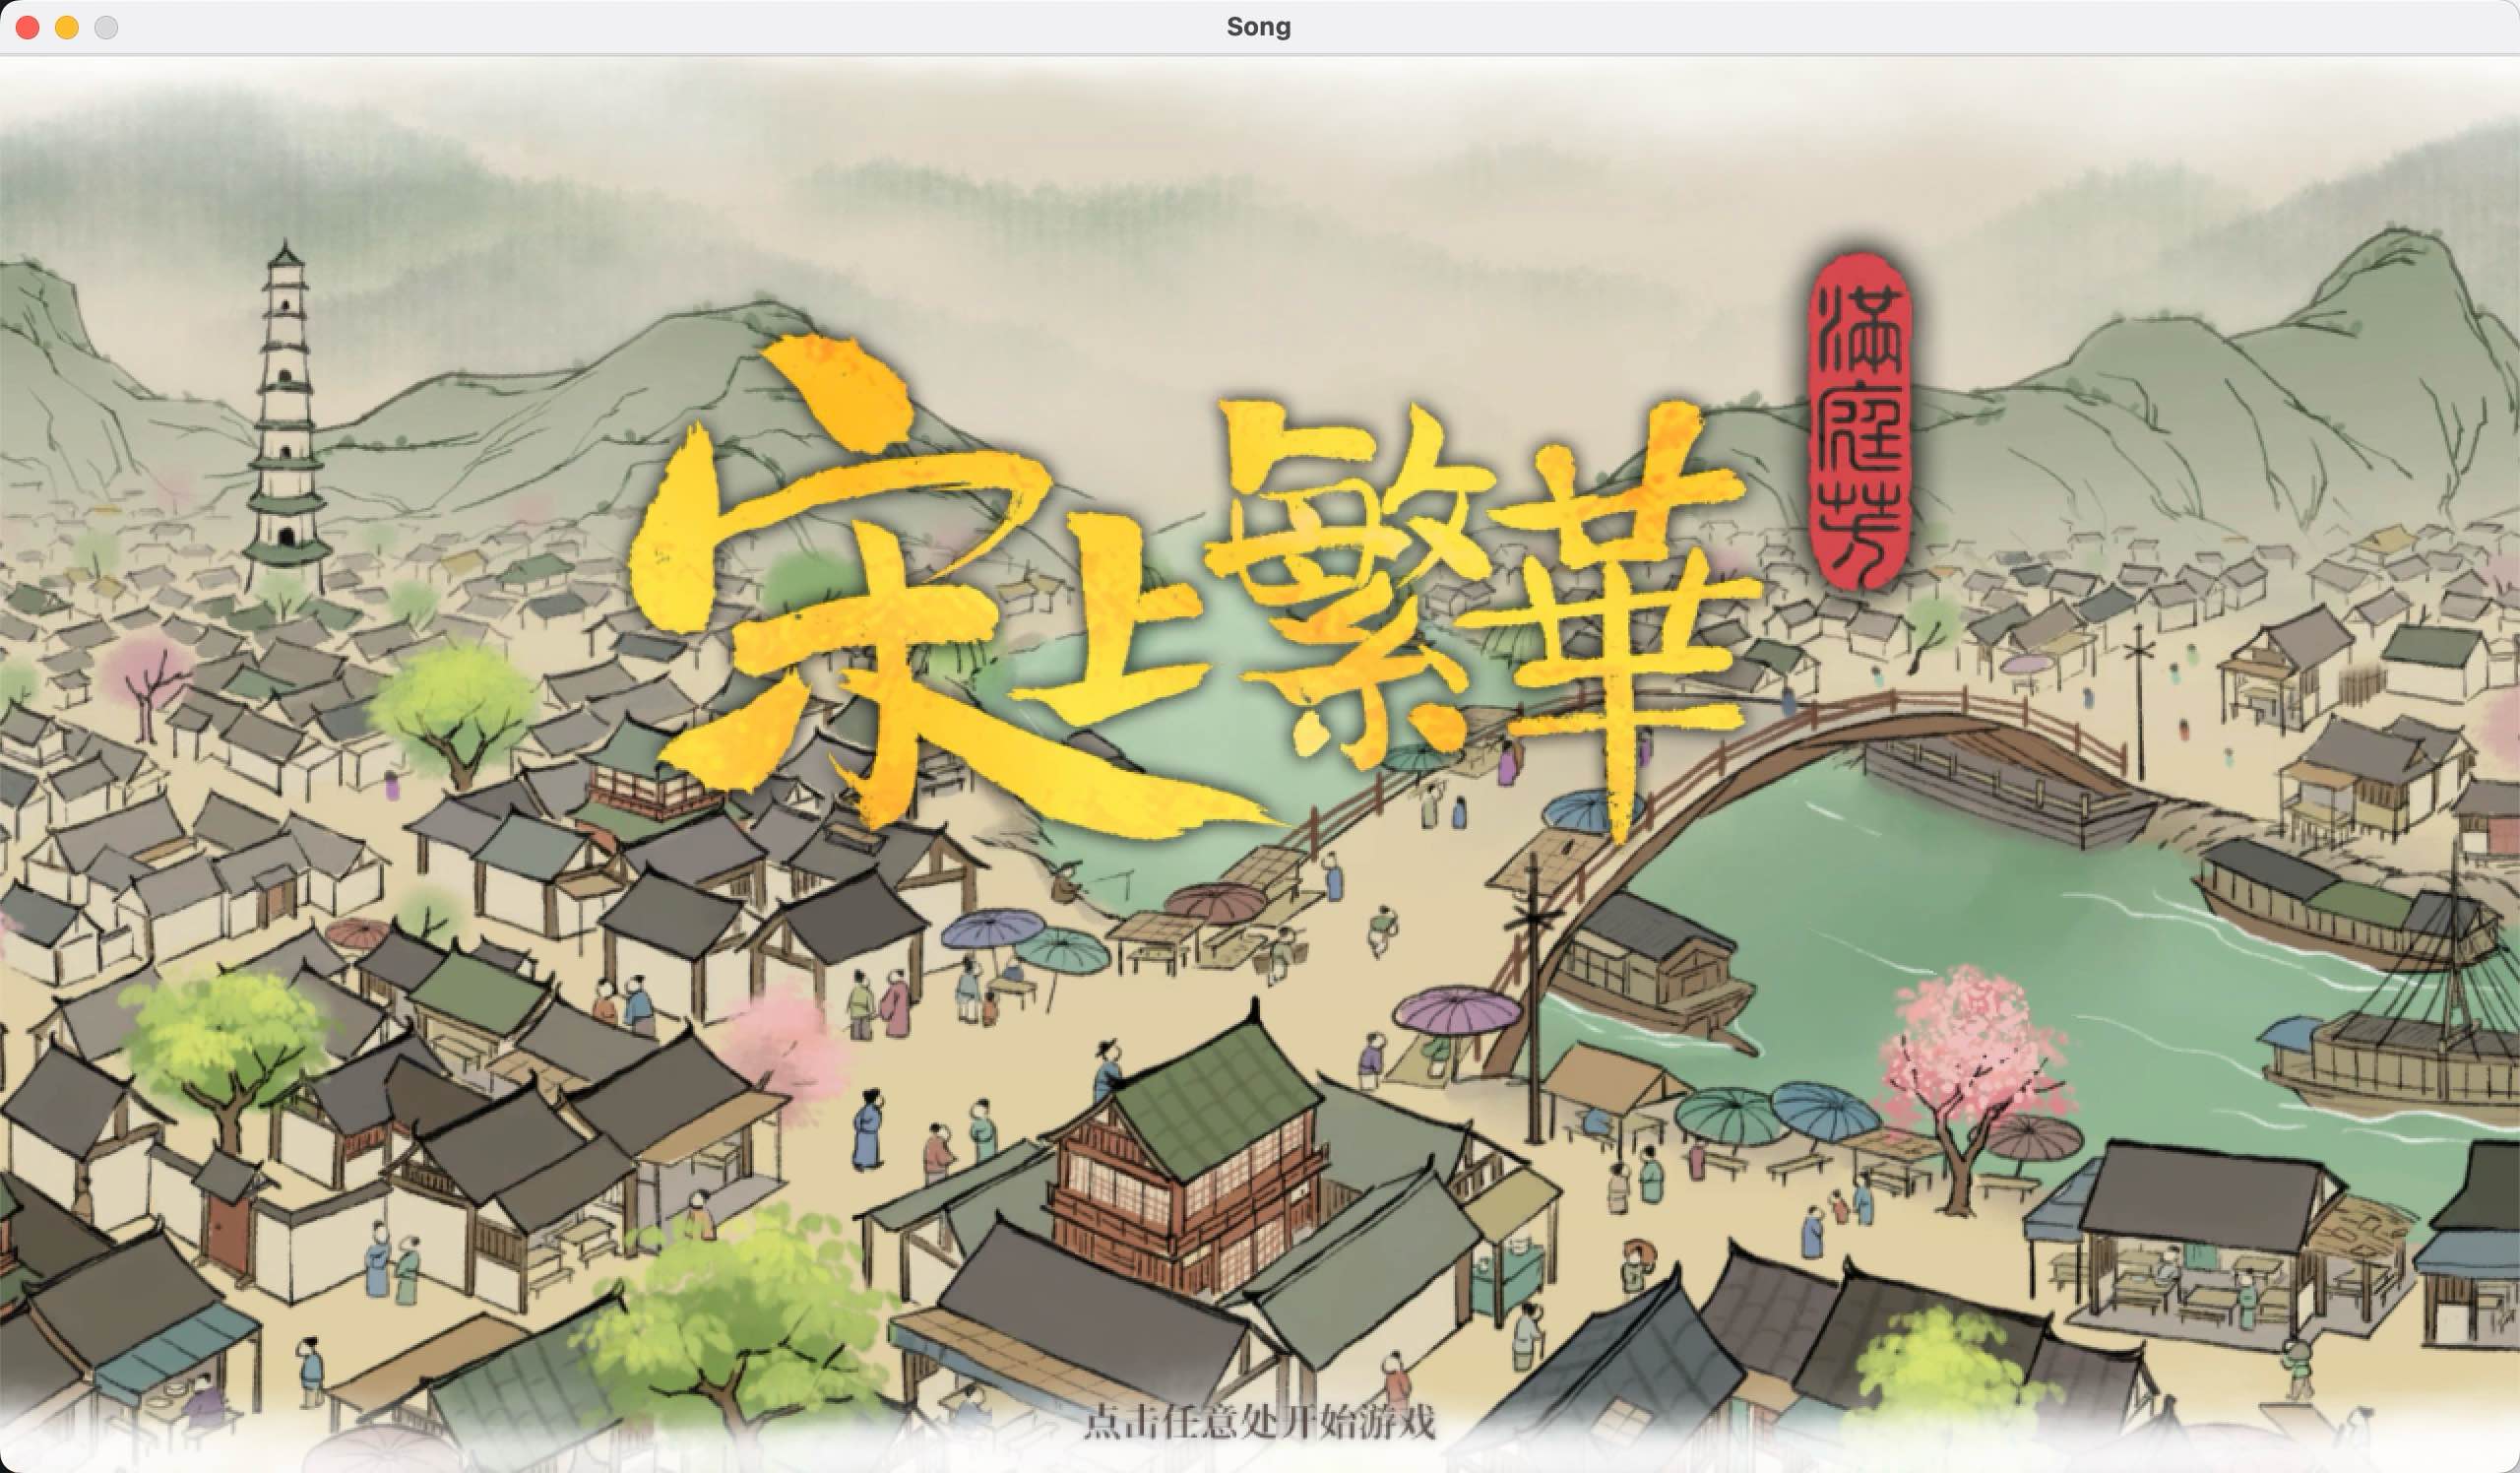 满庭芳：宋上繁华 for Mac v0.5.26 Thriving City: Song 中文移植版 苹果电脑